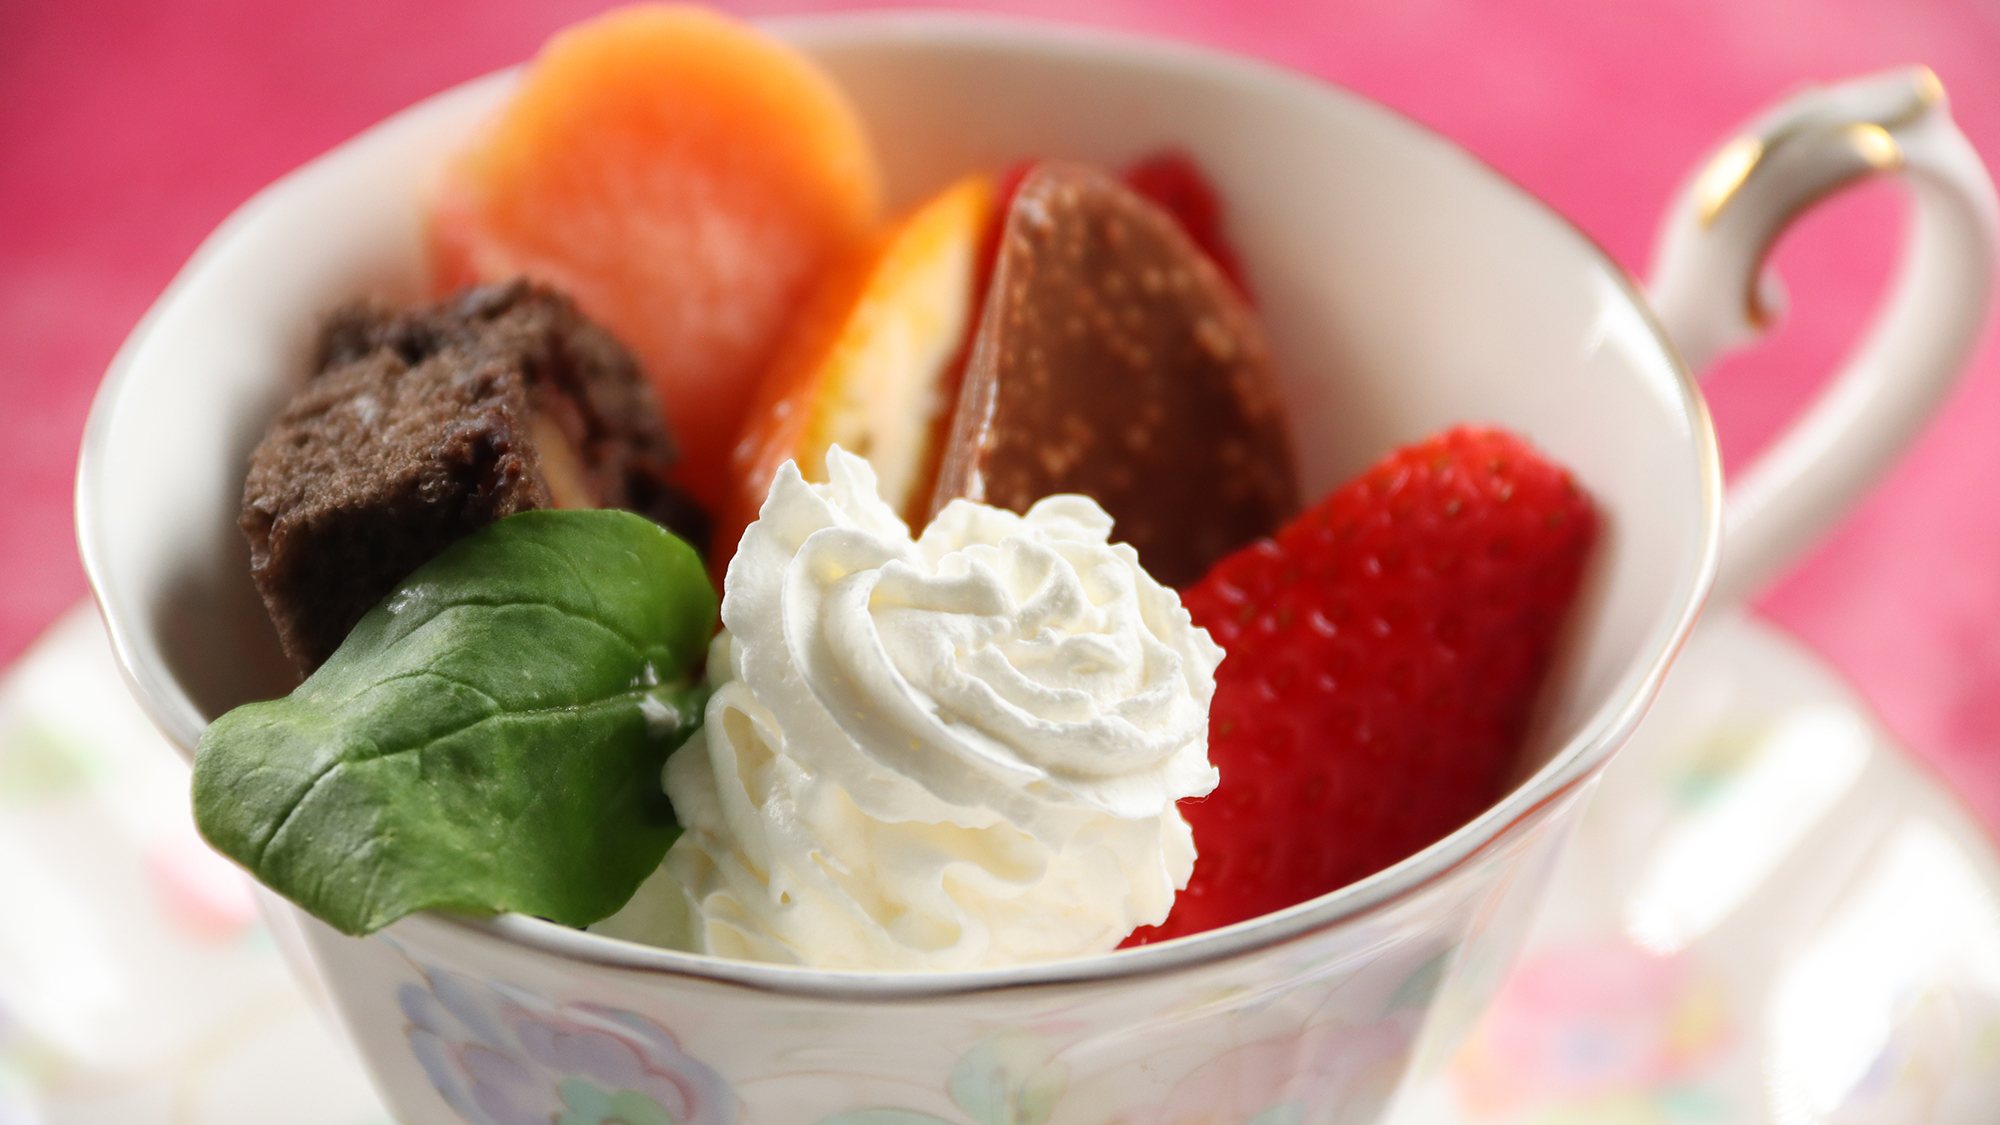 【料理】 夕食 ティーカップデザート - チョコブラウニーのフルーツ添え